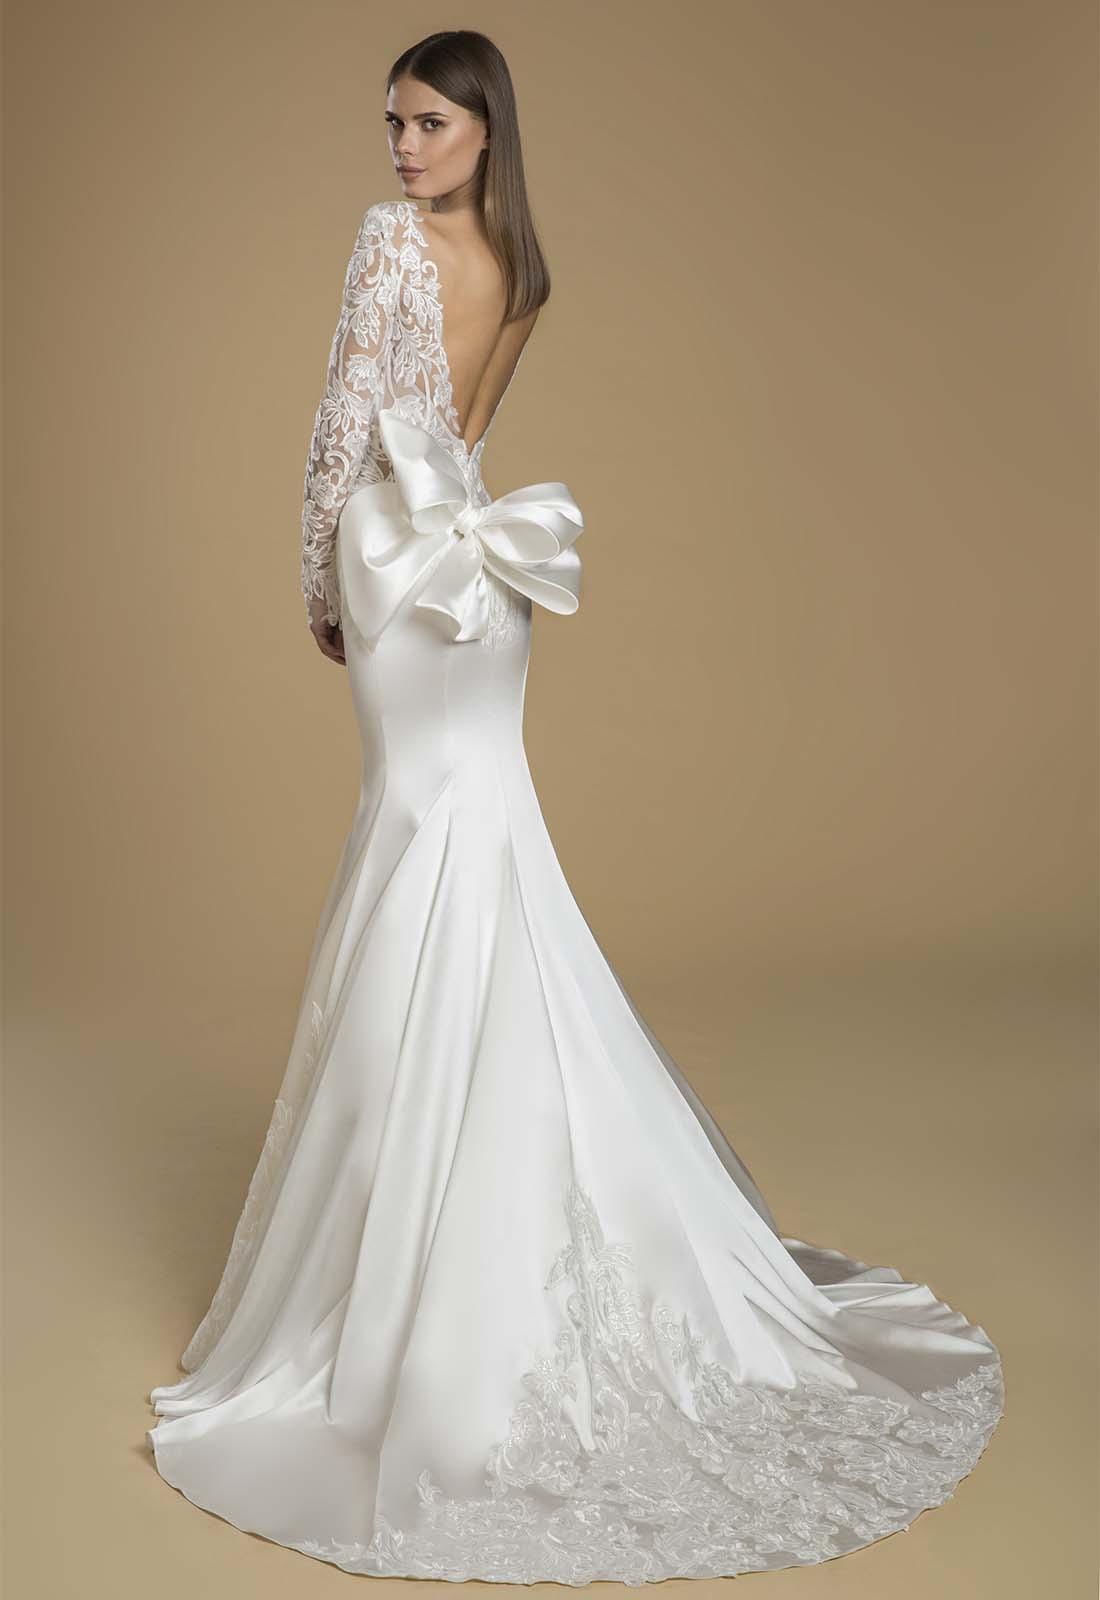 Estos son los 50 vestidos con moños para que no te puedes perder - bodas.com.mx